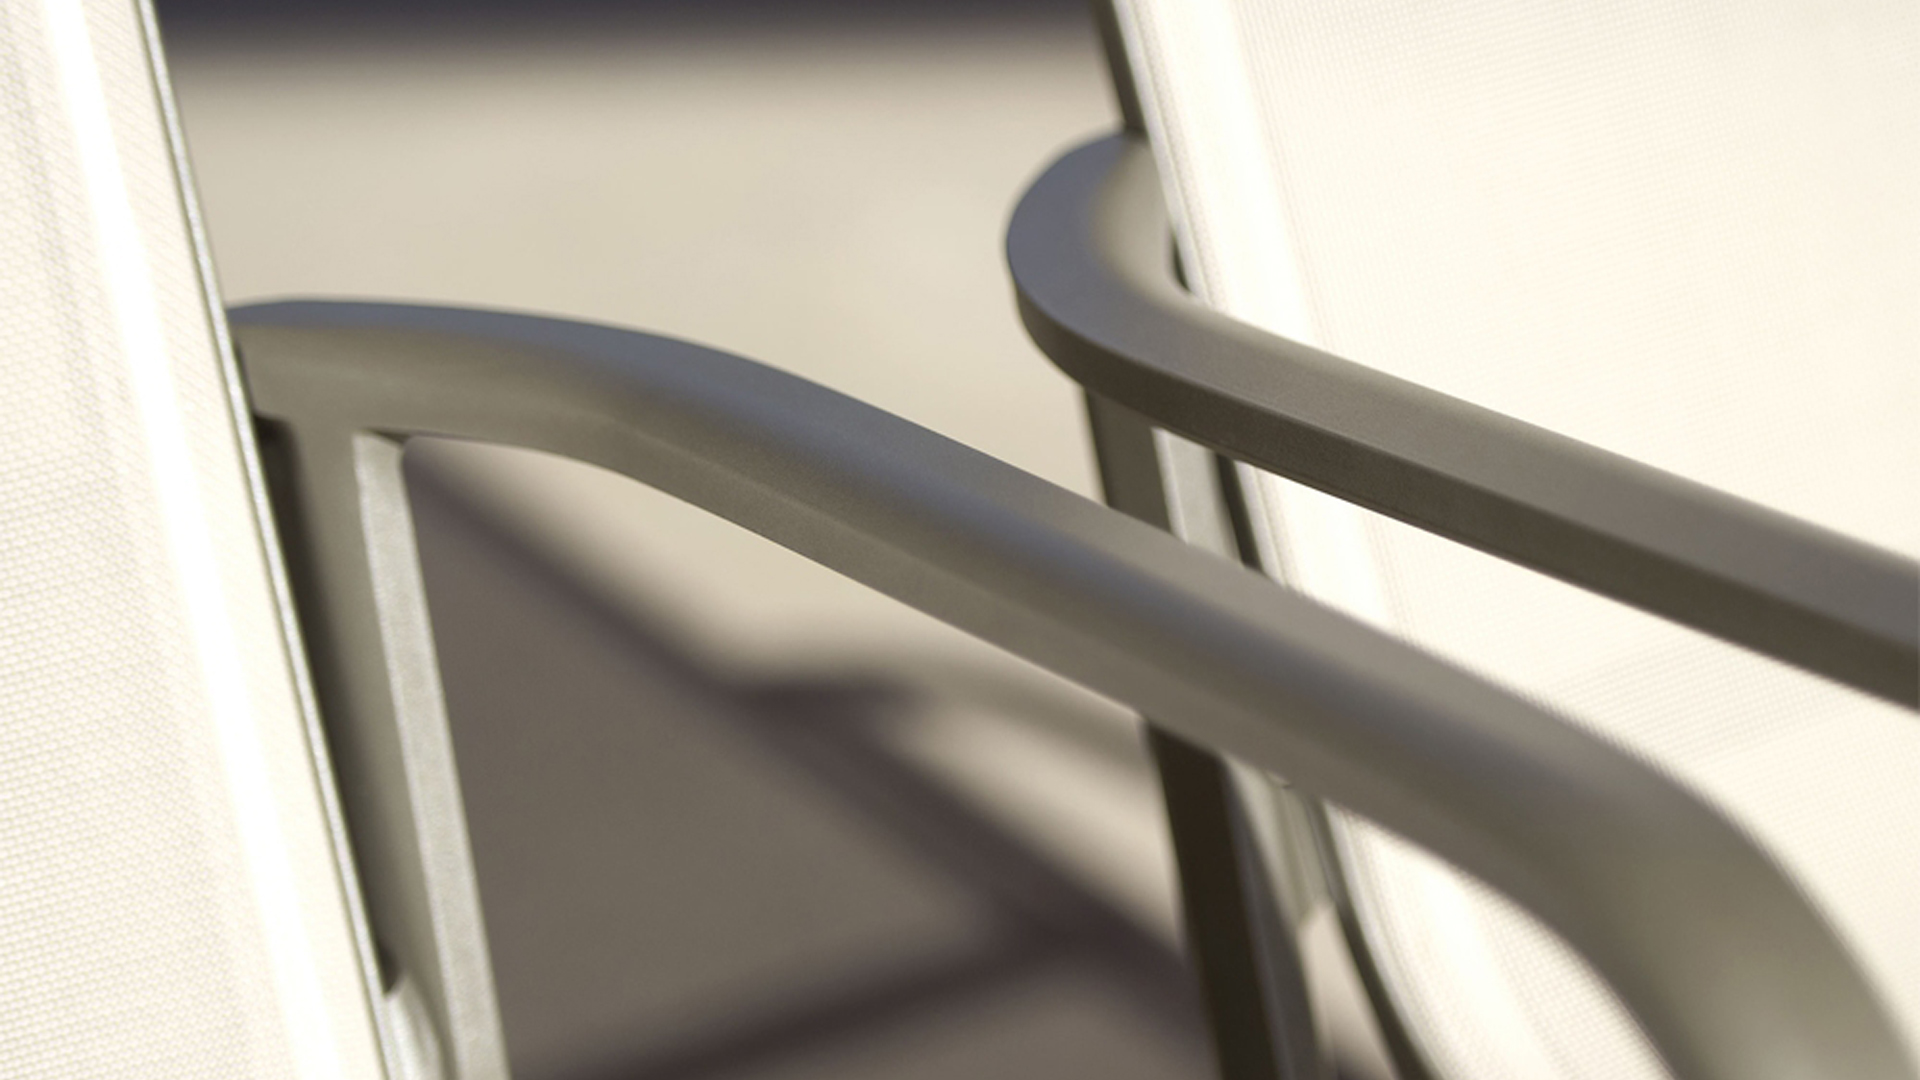 Le siège extérieur HEGOA possède une structure en aluminium original avec assises en batilyne® galbées. Ce fauteuil d'extérieur offre ergonomie et confort exceptionnel. Les fauteuils HEGOA s’adaptent à tout type d’extérieur et d’environnement. Un siège idéal pour l’ameublement extérieur, ameublement de restaurants, mobilier pour hotels.